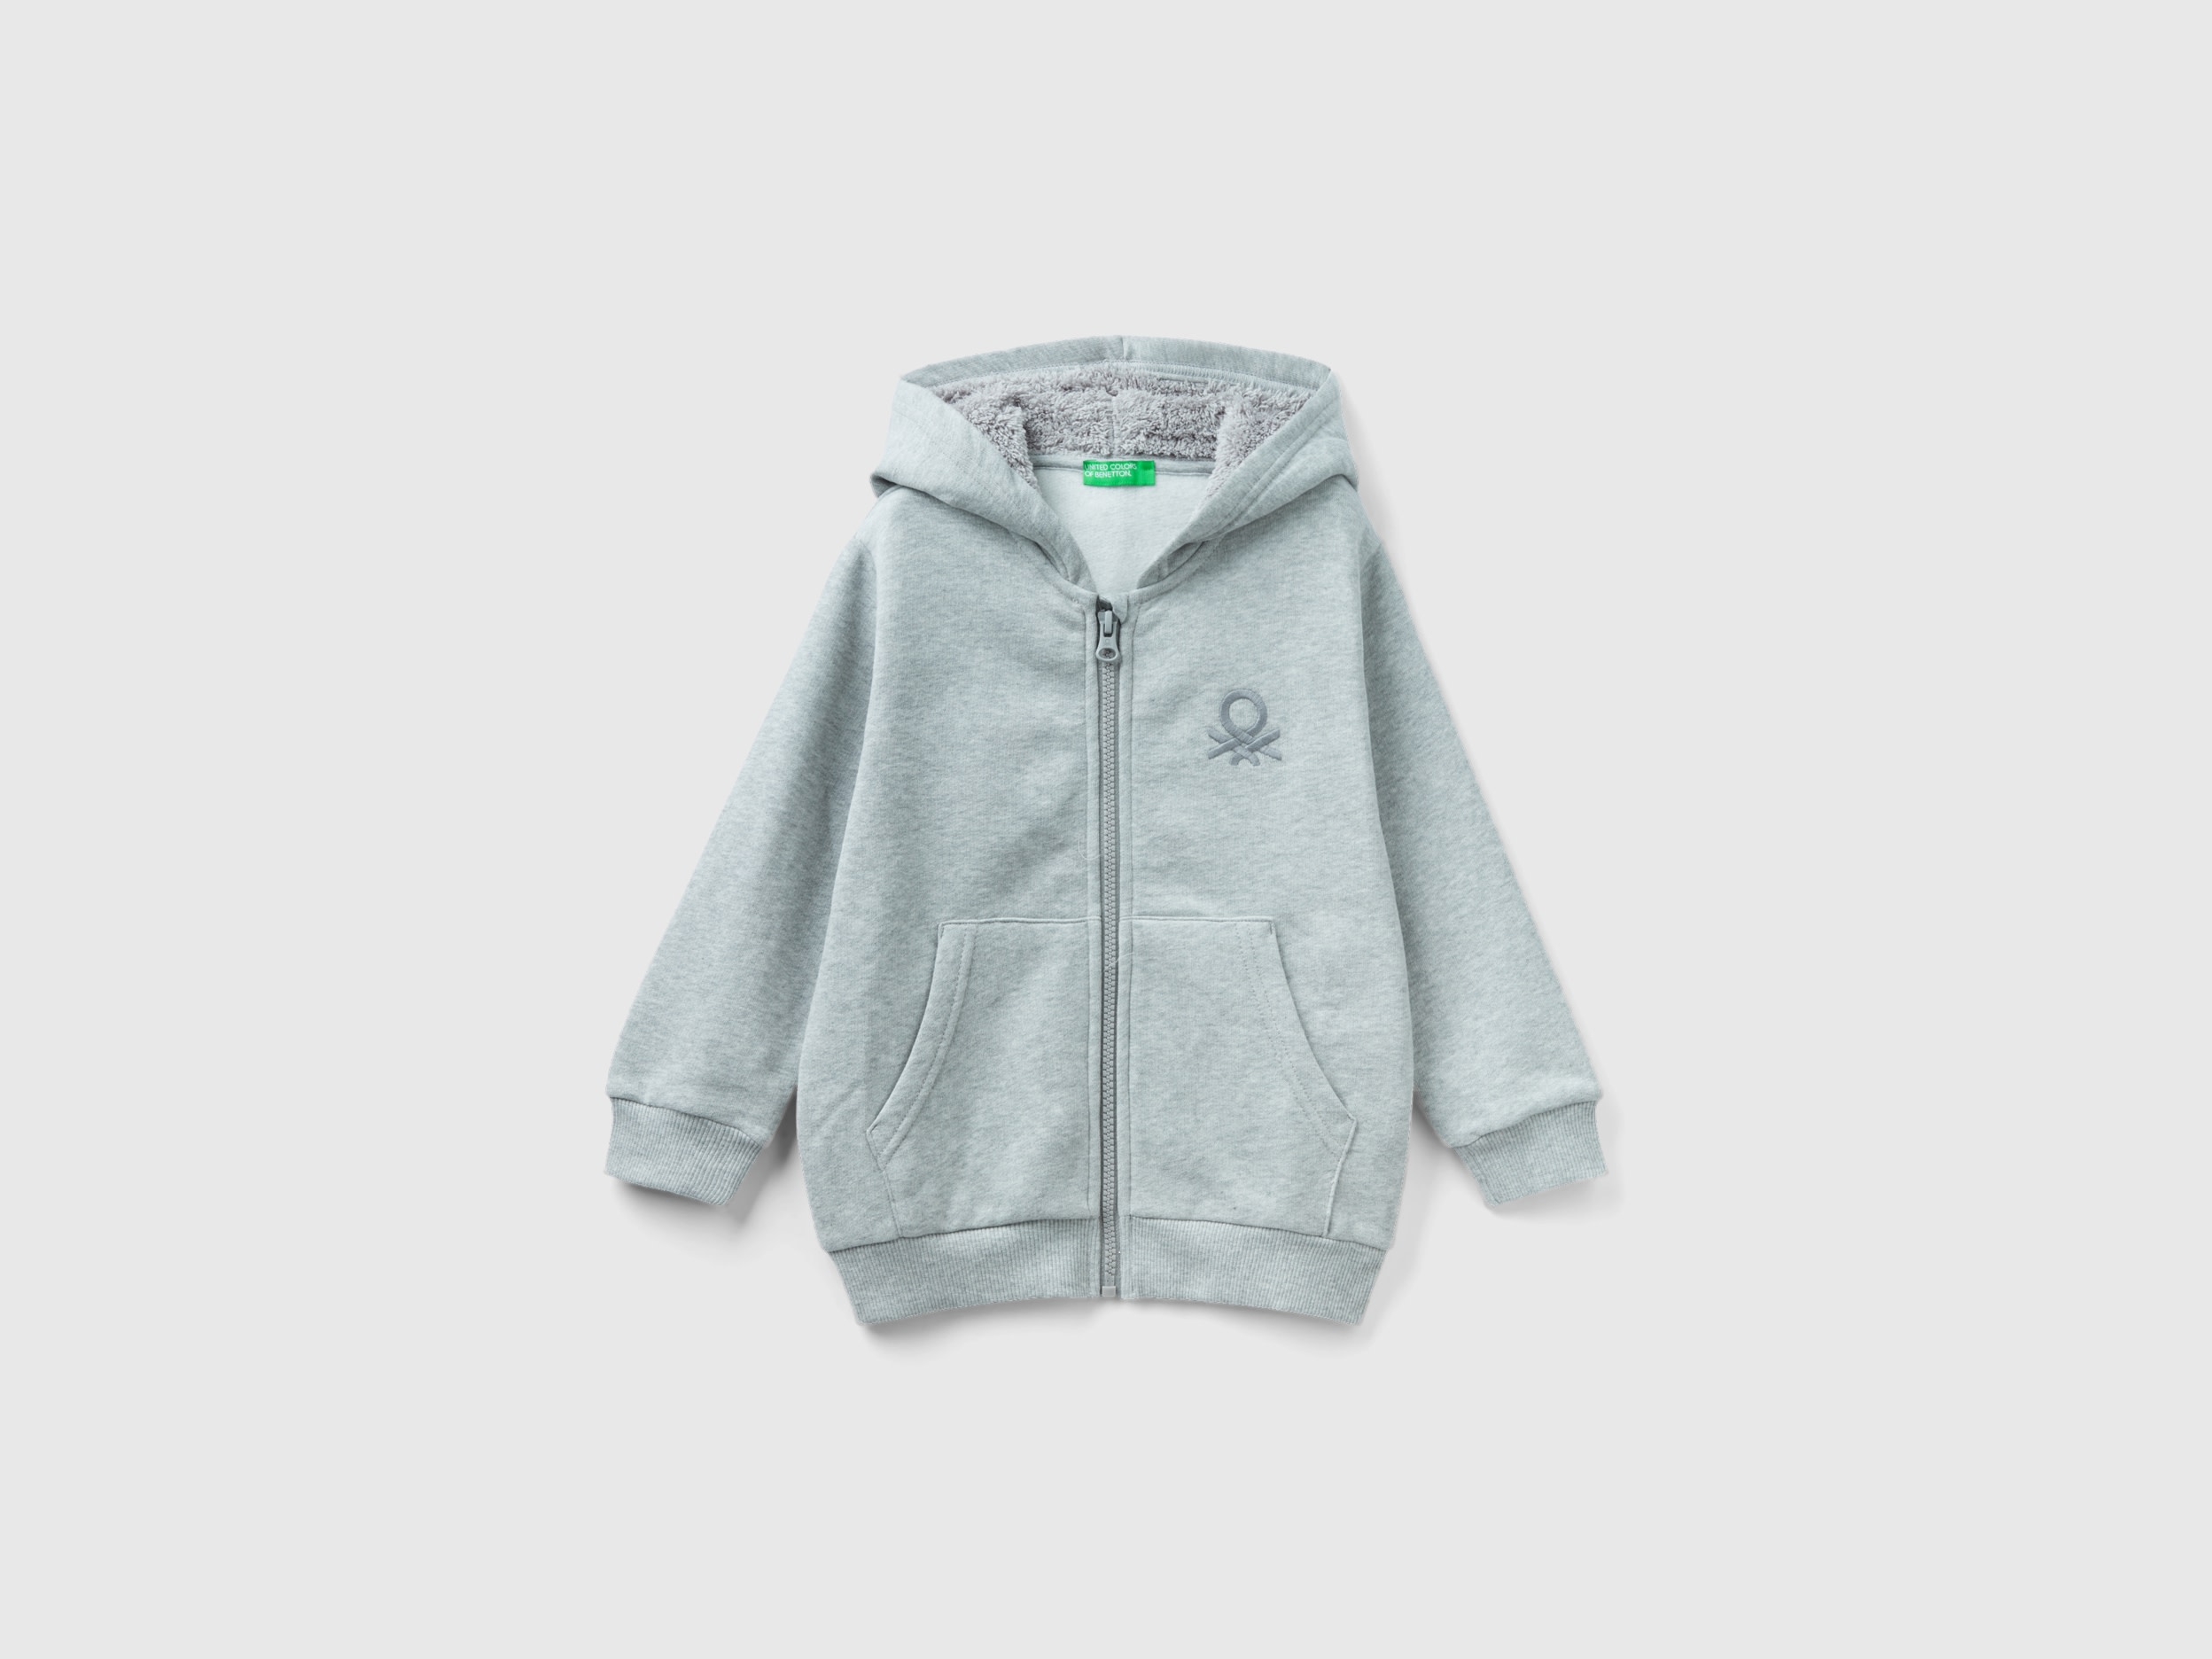 Benetton, Sweatshirt With Lined Hood, size 5-6, Gray, Kids